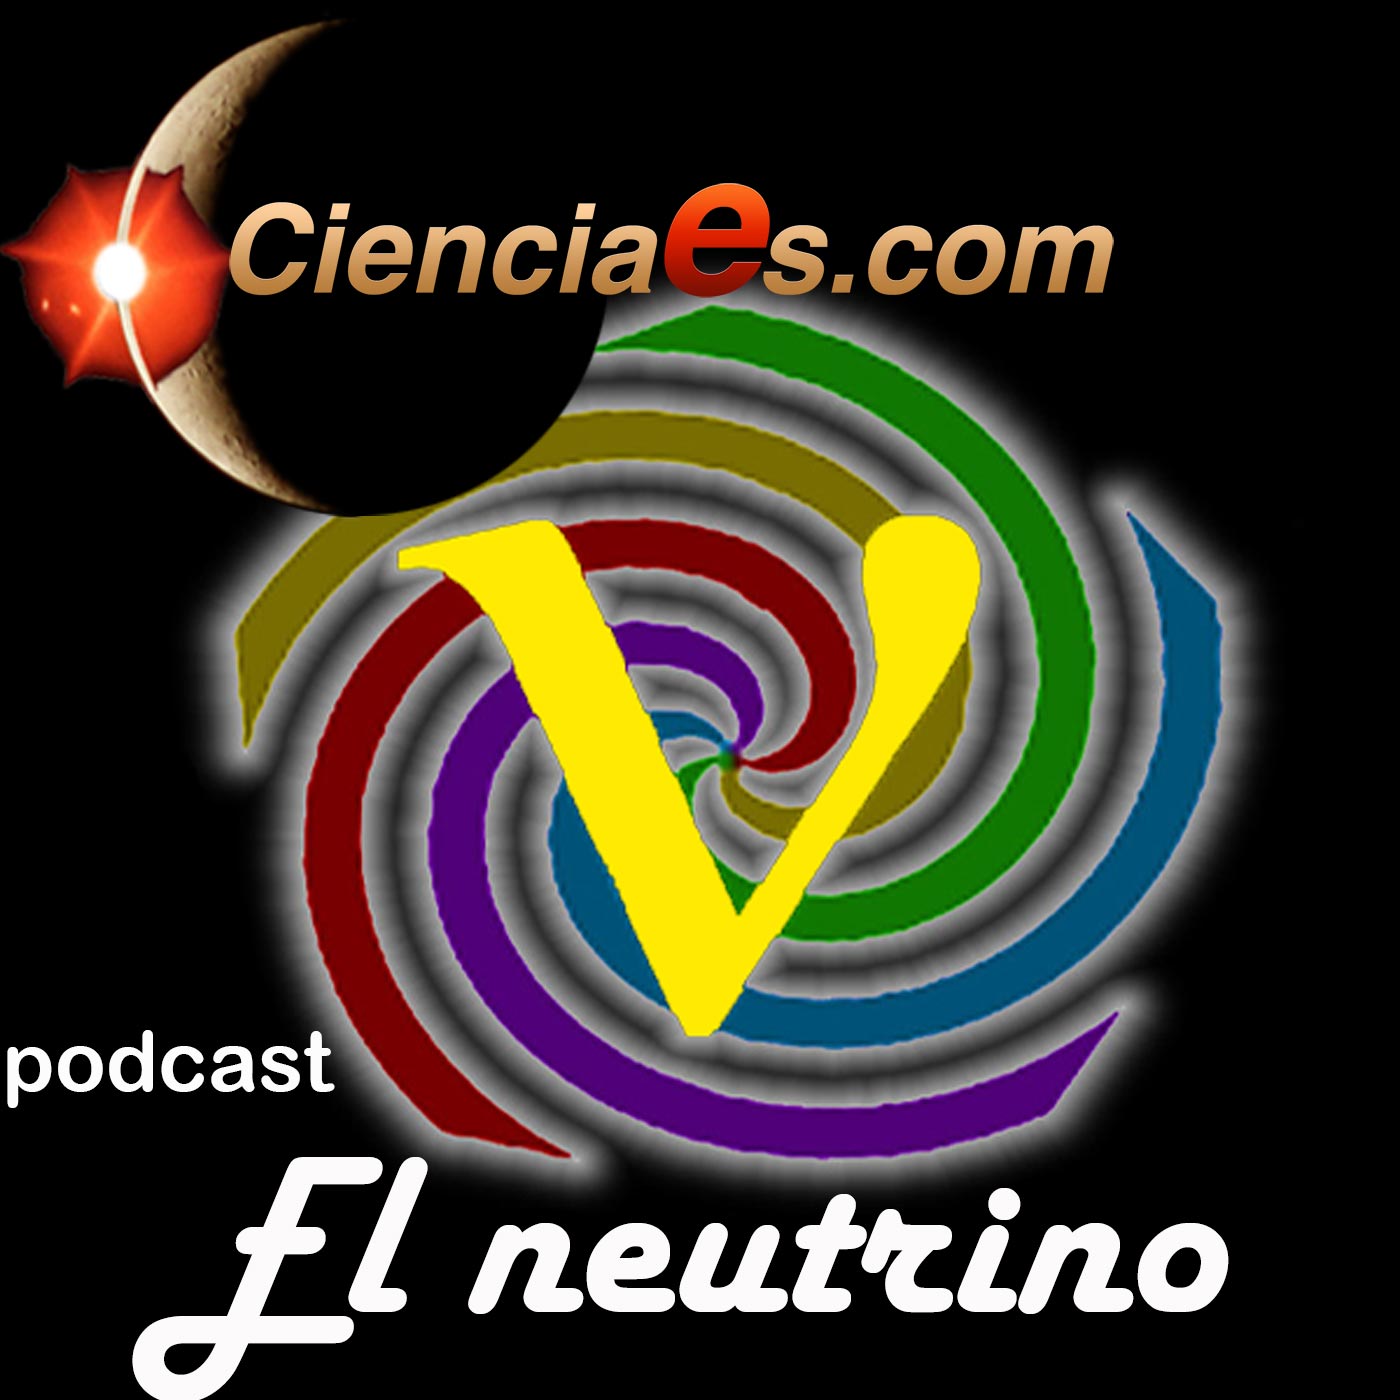 El Neutrino - Cienciaes.com Podcast artwork